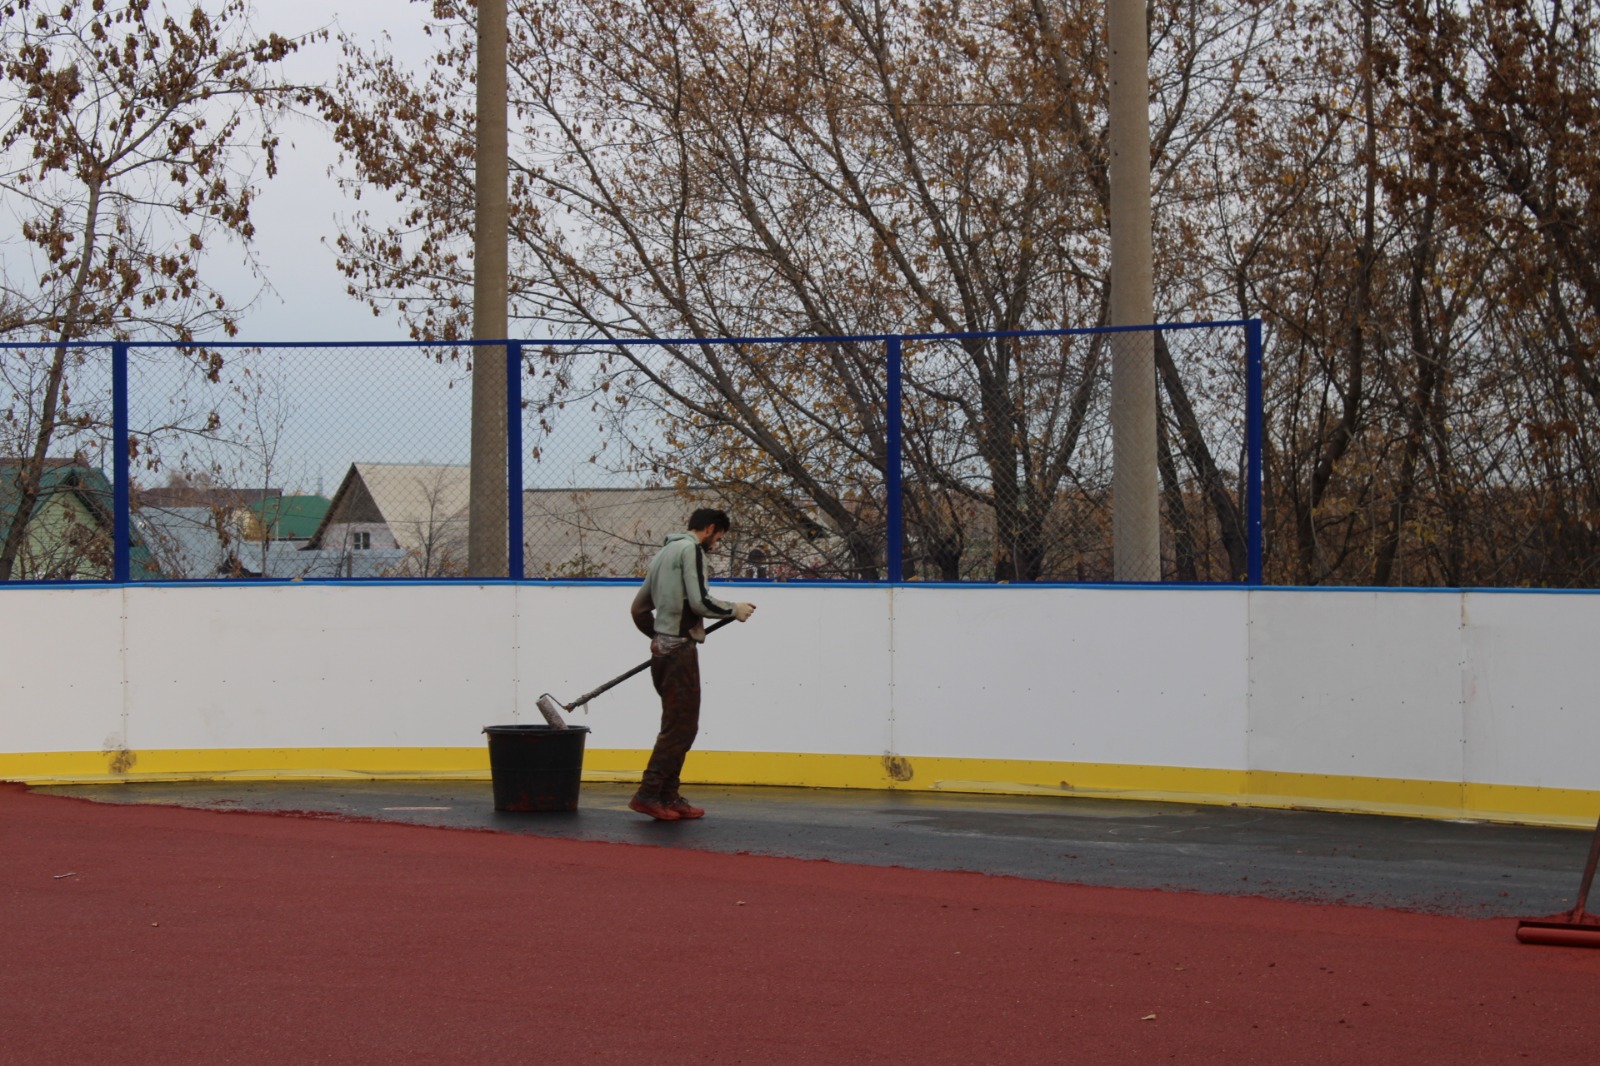 Завершаются работы по монтажу новой хоккейной коробки мкр. Бажово, которая находится на территории «Детский юношеский центр» г. Новоалтайска..